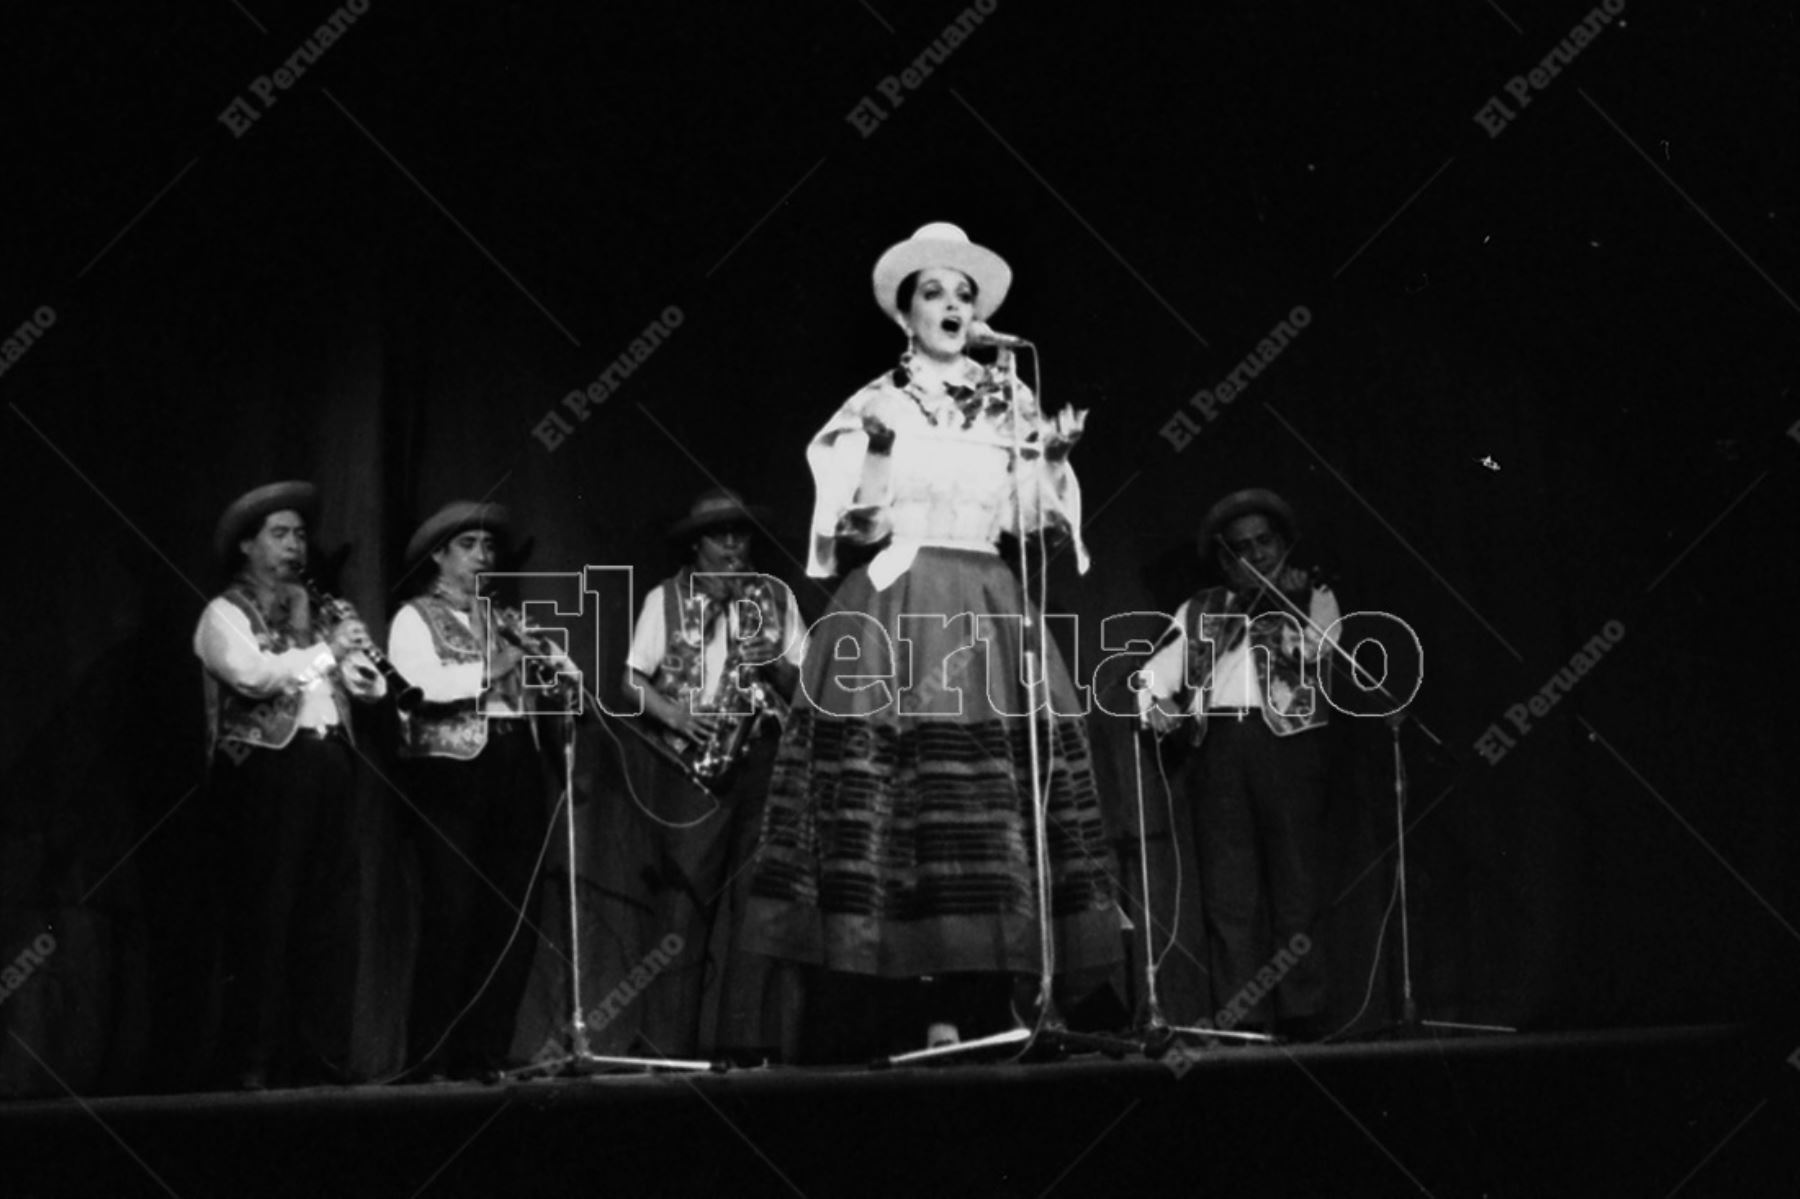 Lima - 2 agosto 1977. La consagrada cantante Alicia Maguiña durante un recital en el Teatro La Cabaña. Foto: Archivo Histórico de El Peruano / Leoncio Mariscal